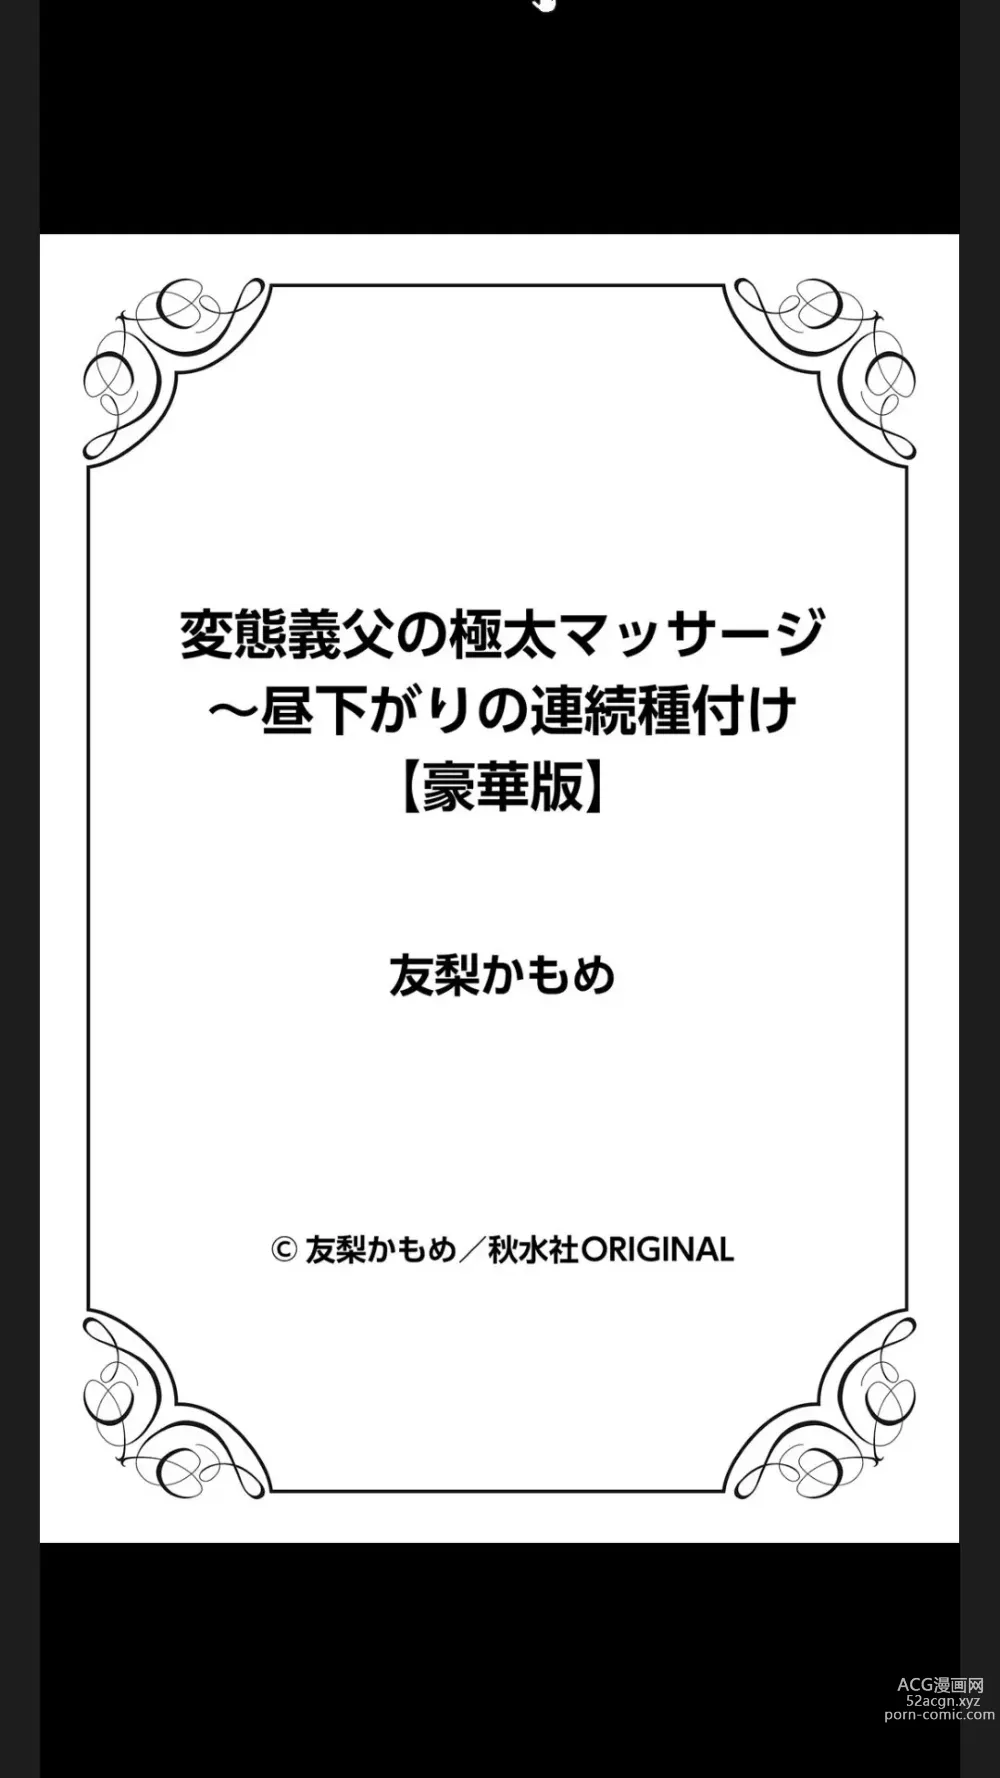 Page 150 of manga Hentai Gifu no Gokubuto Massage ~ Hirusagari no Renzoku Tanetsuke